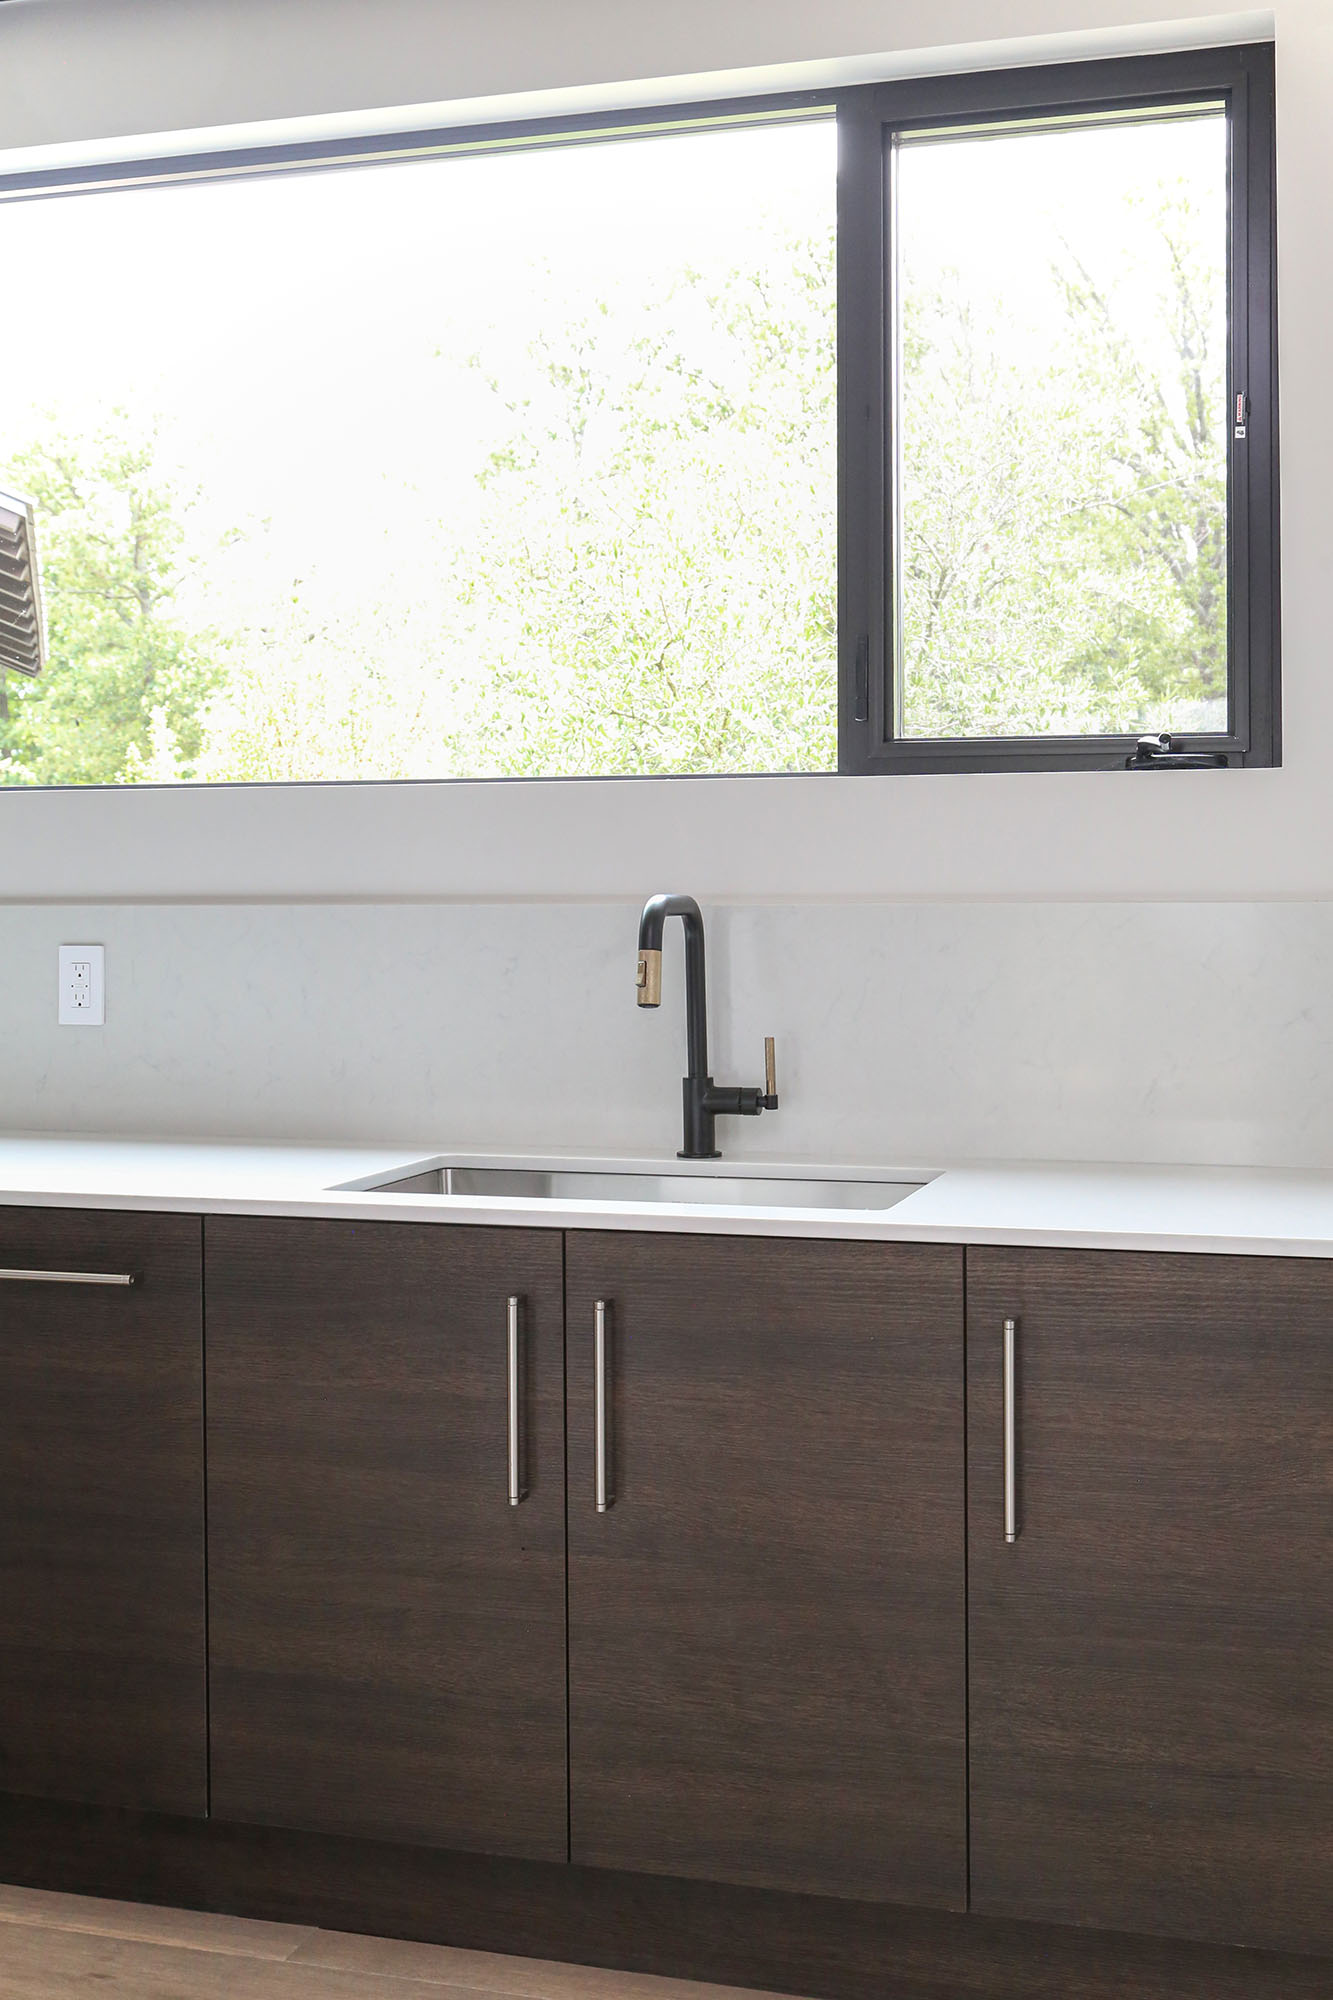 Door Storage Undermount Sink Wood Flooring White Counter Backsplash Elite Cabinets Tulsa Kitchen